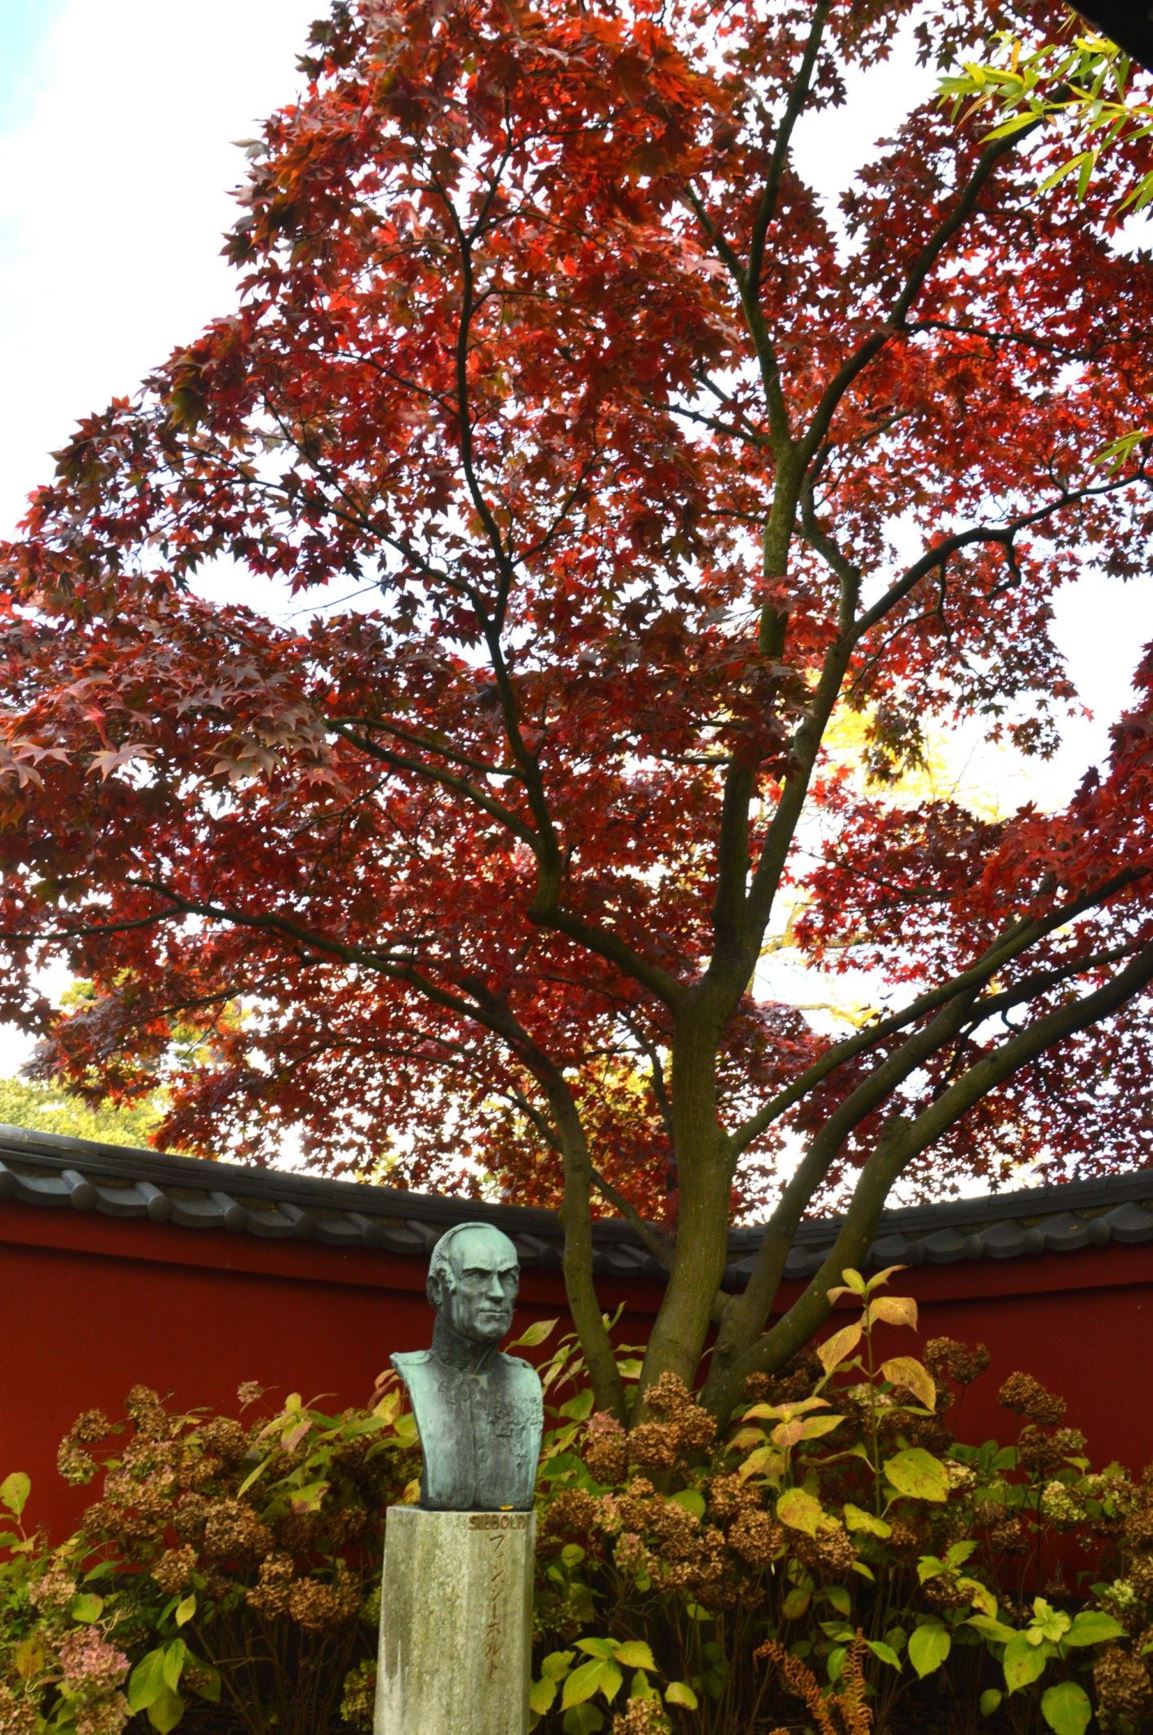 Acer palmatum 'Atropurpureum' - Roodbladige Japanse esdoorn, Red leaf Japanese maple